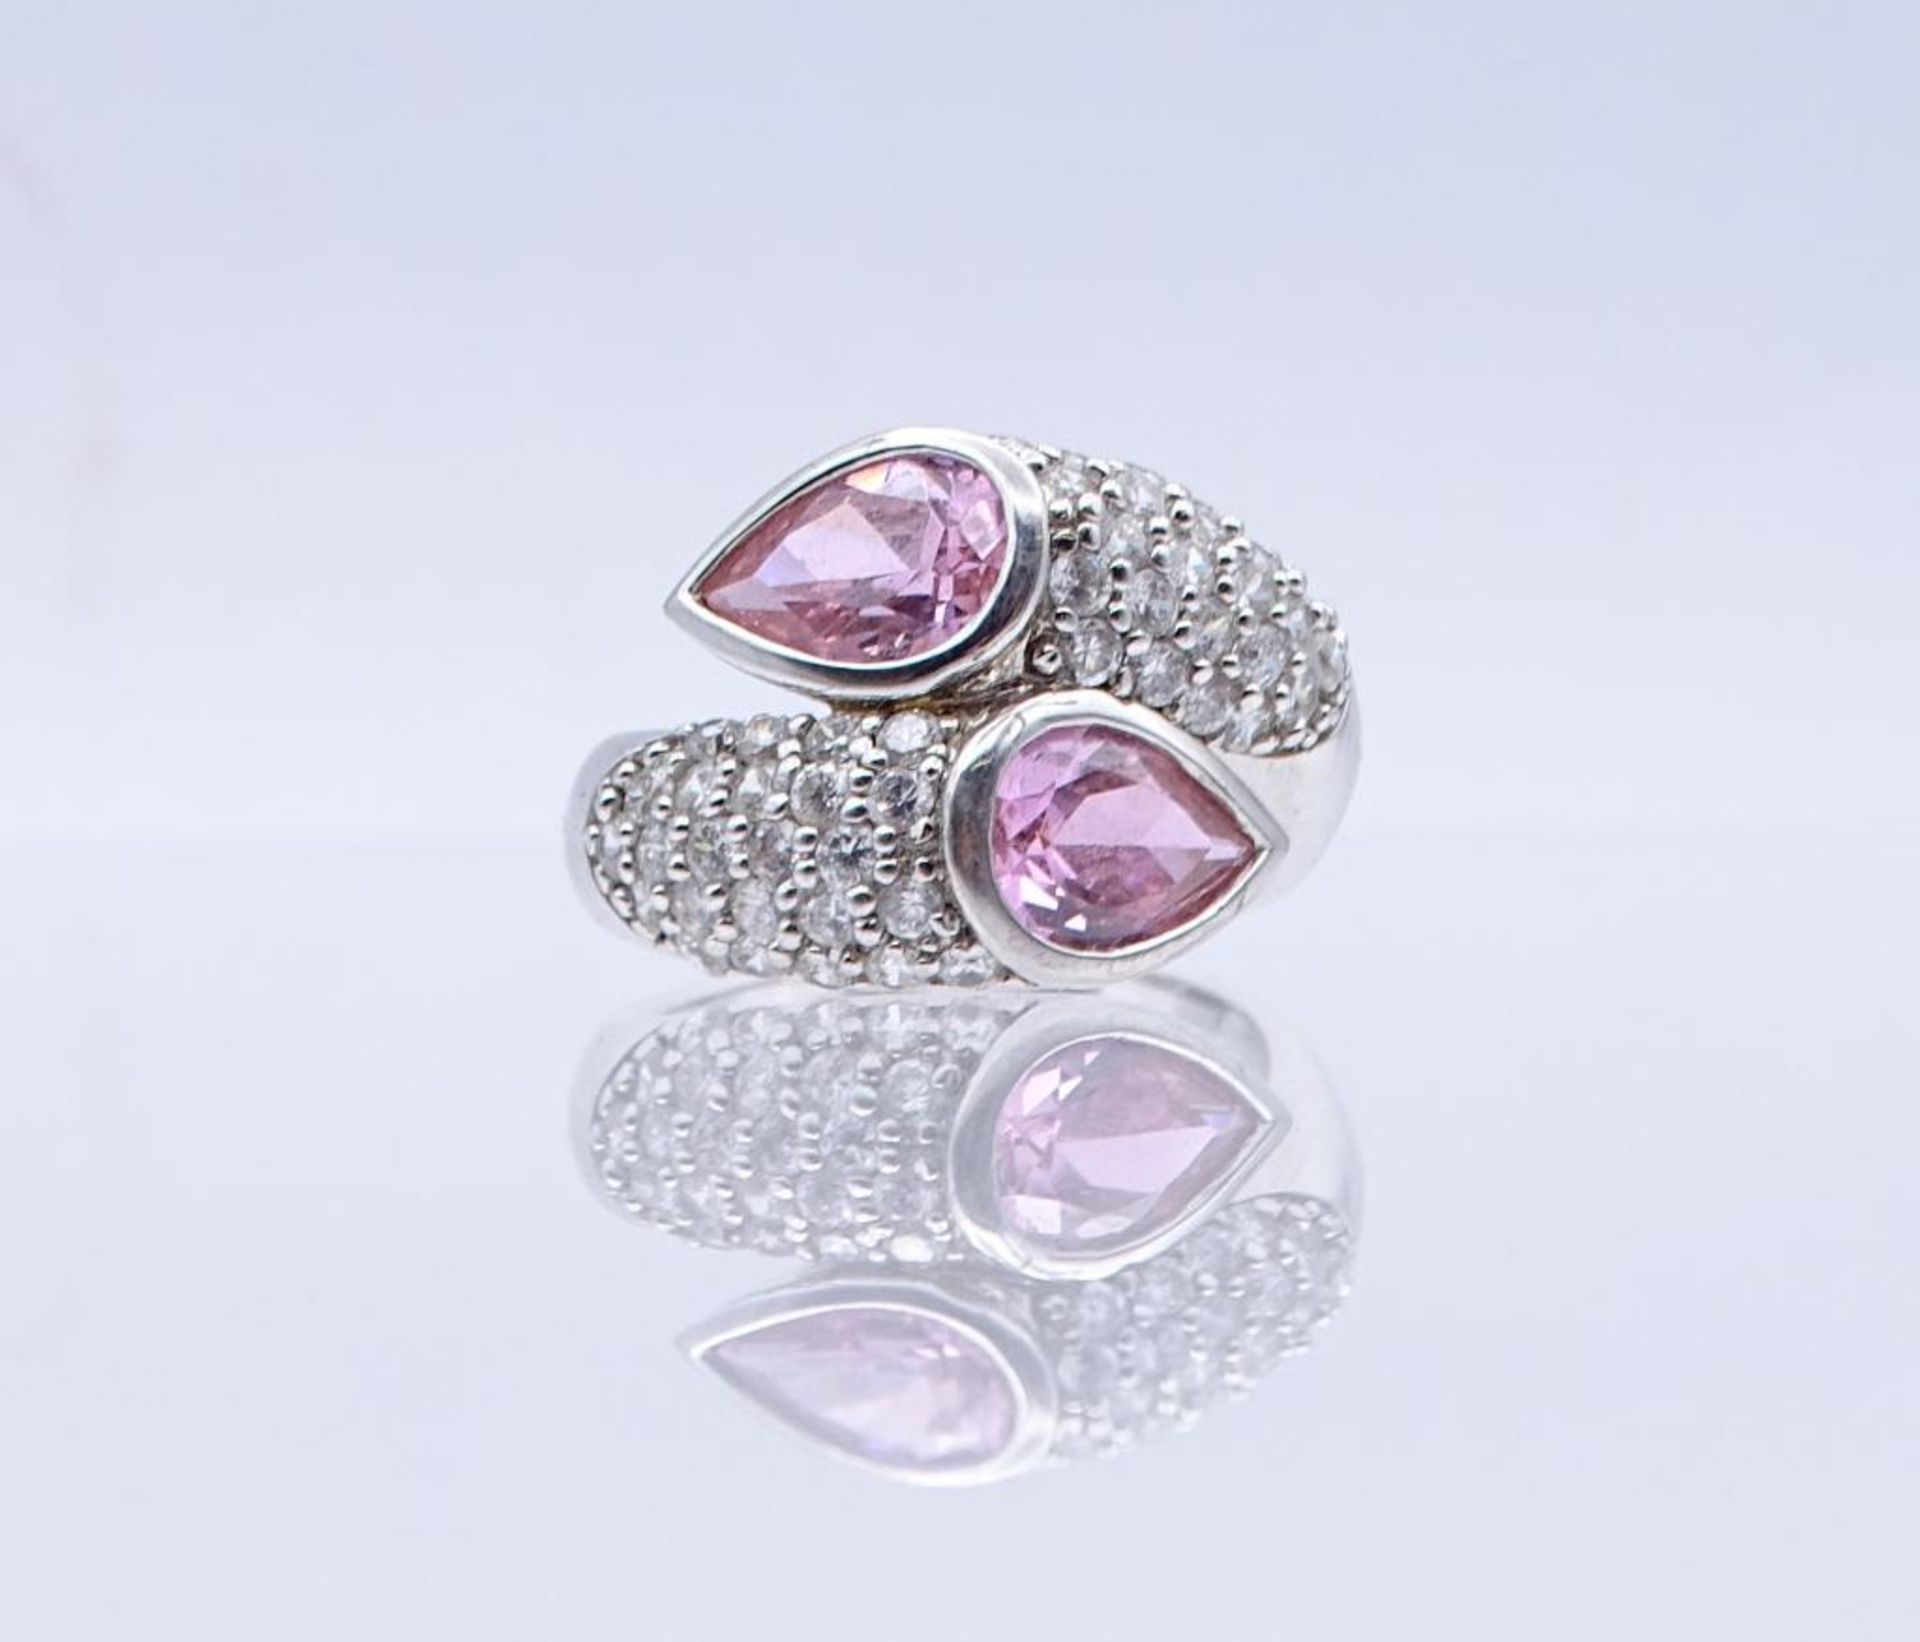 Silber Ring mit pinken und klaren Steinen, 9,9gr., RG 60- - -22.61 % buyer's premium on the hammer